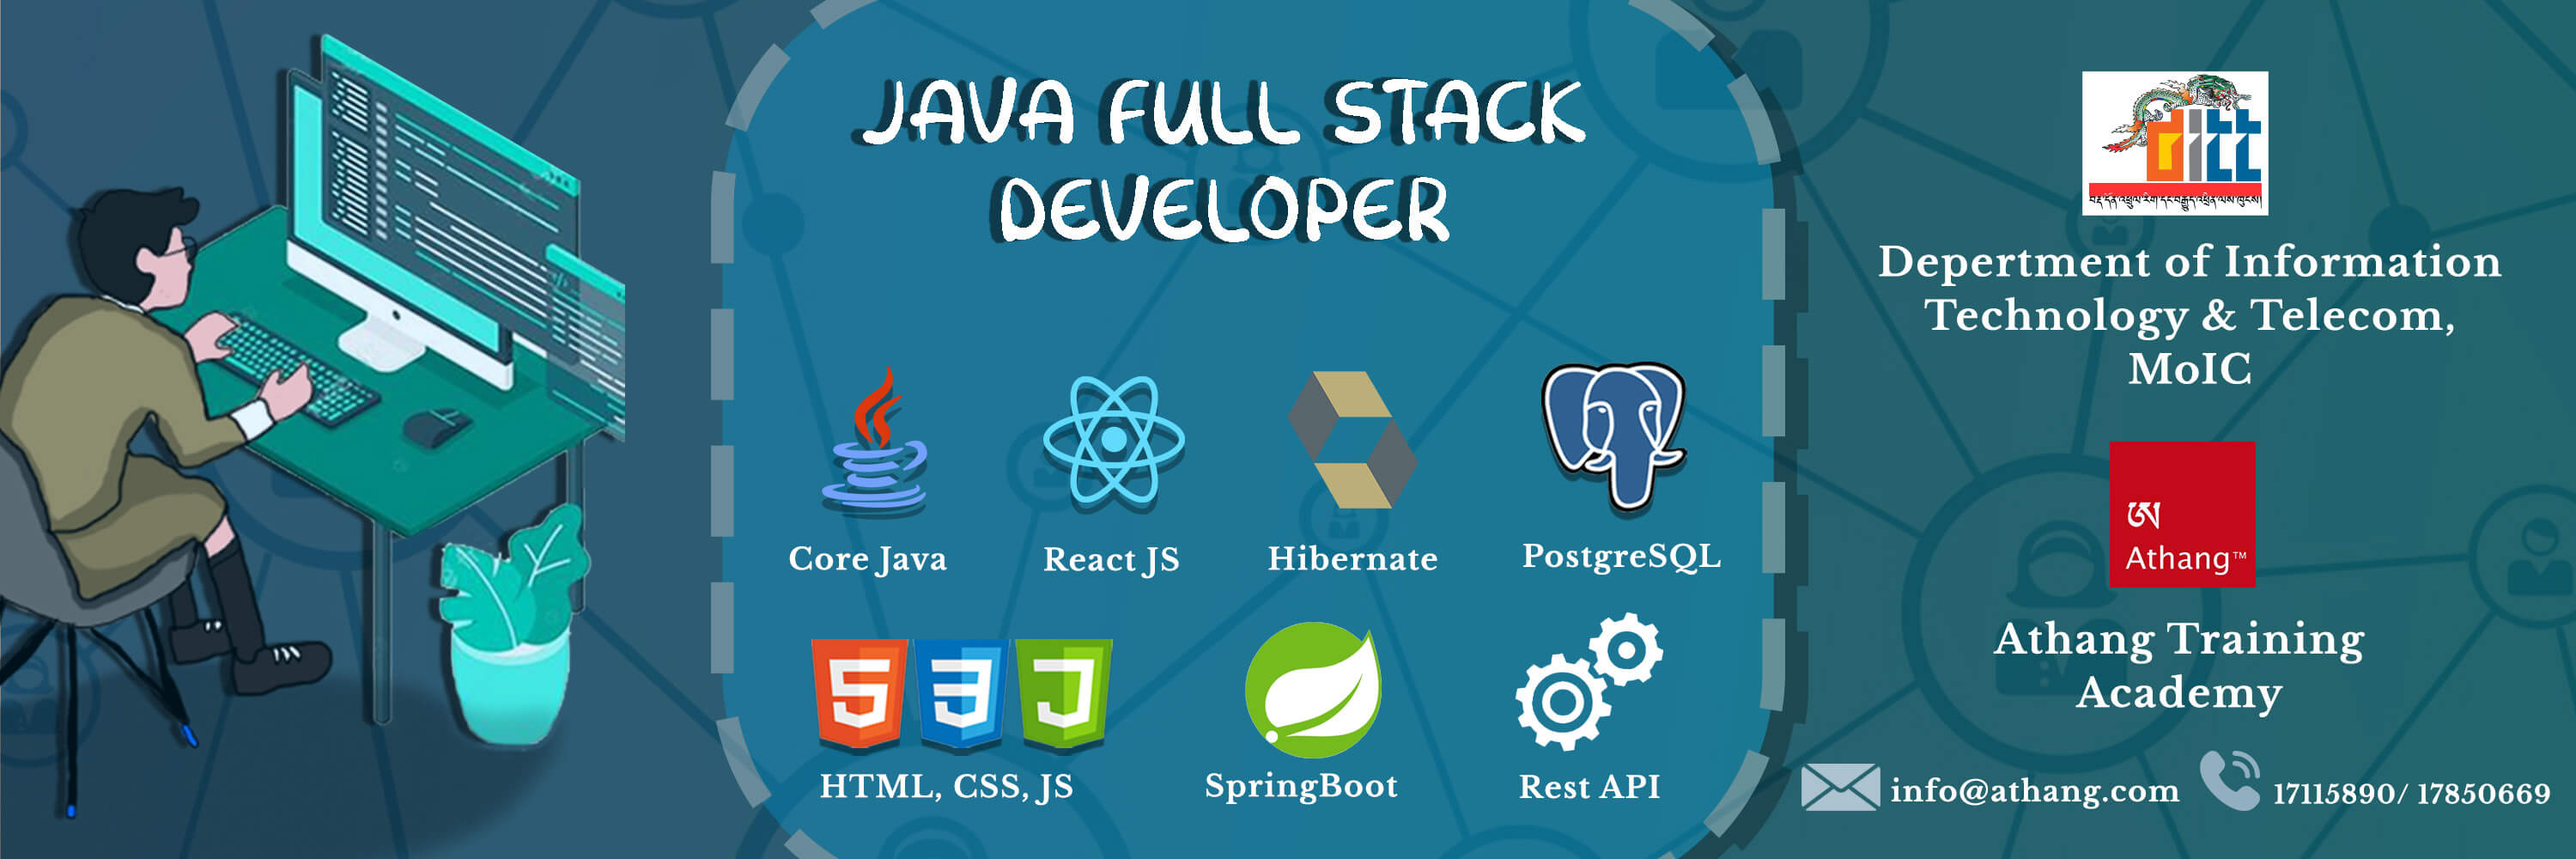 Call for Registration of Training on “Java Full Stack Developer”